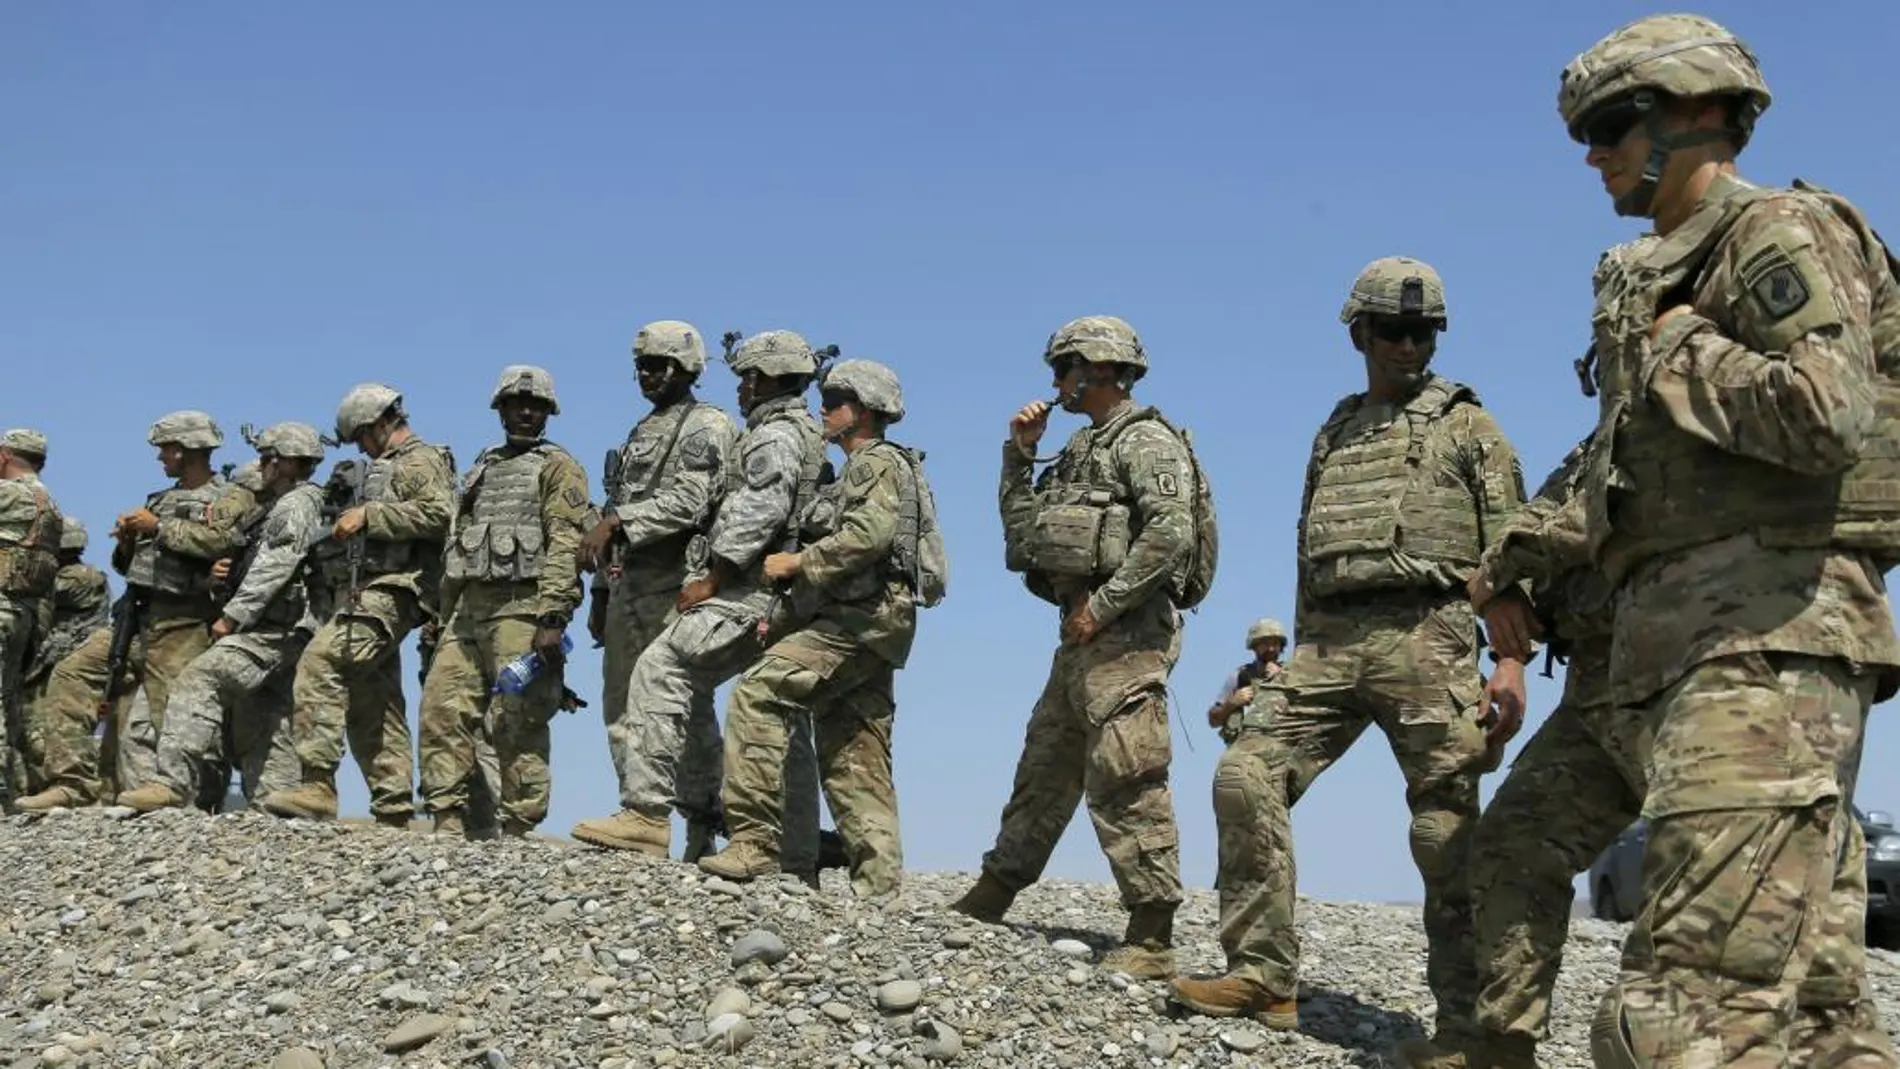 Soldados del Ejército estadounidense, durante un ejercicio, en una imagen de archivo